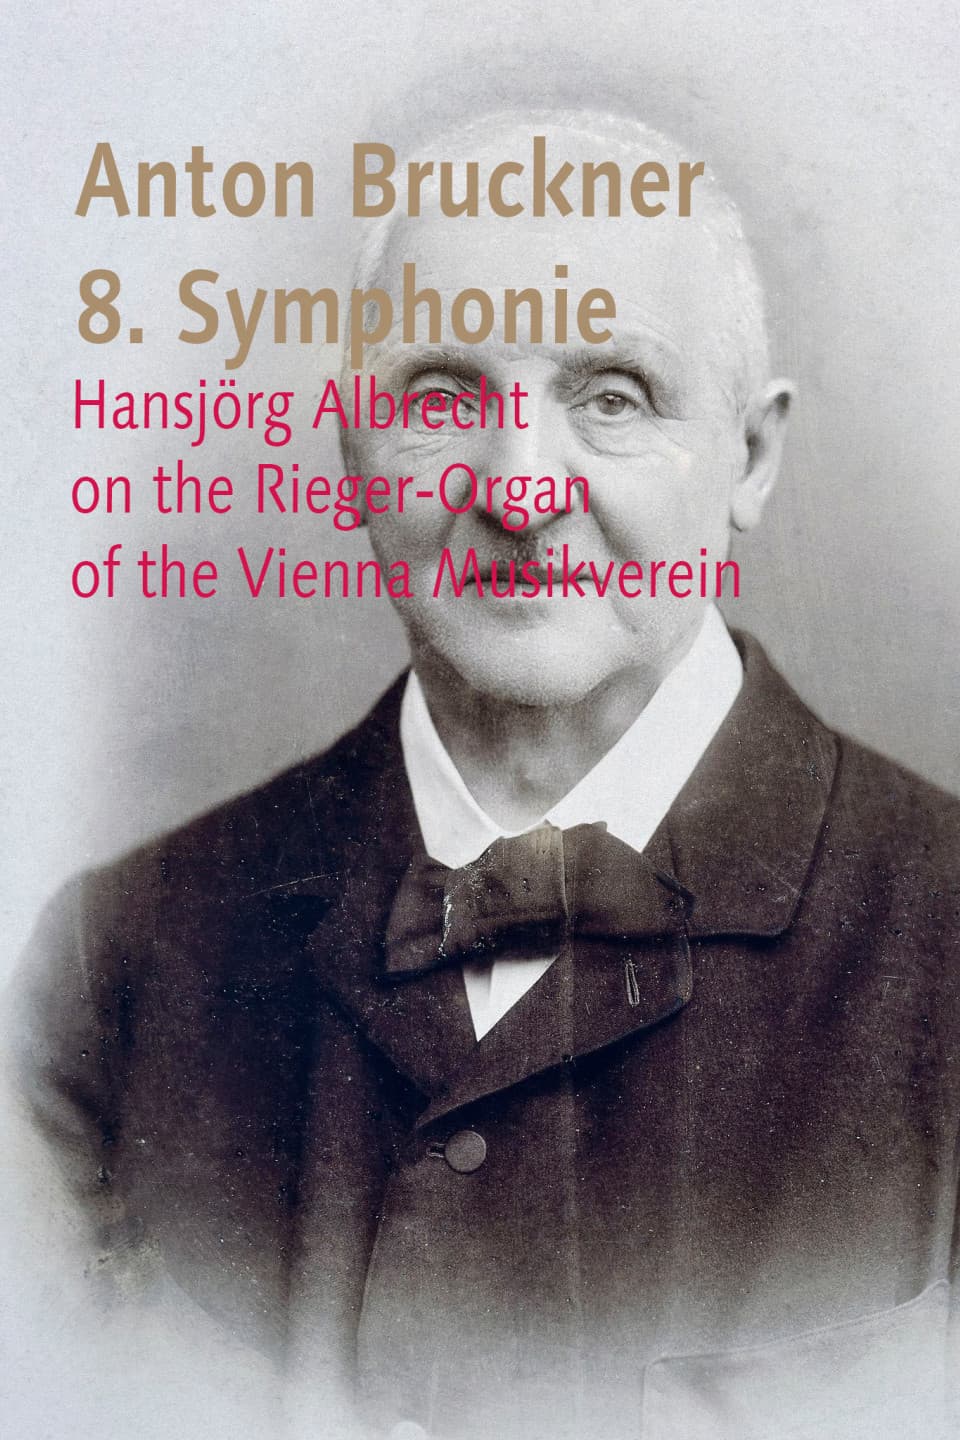 Bruckner 8. Symphonie on the Rieger organ of Vienna Musikverein